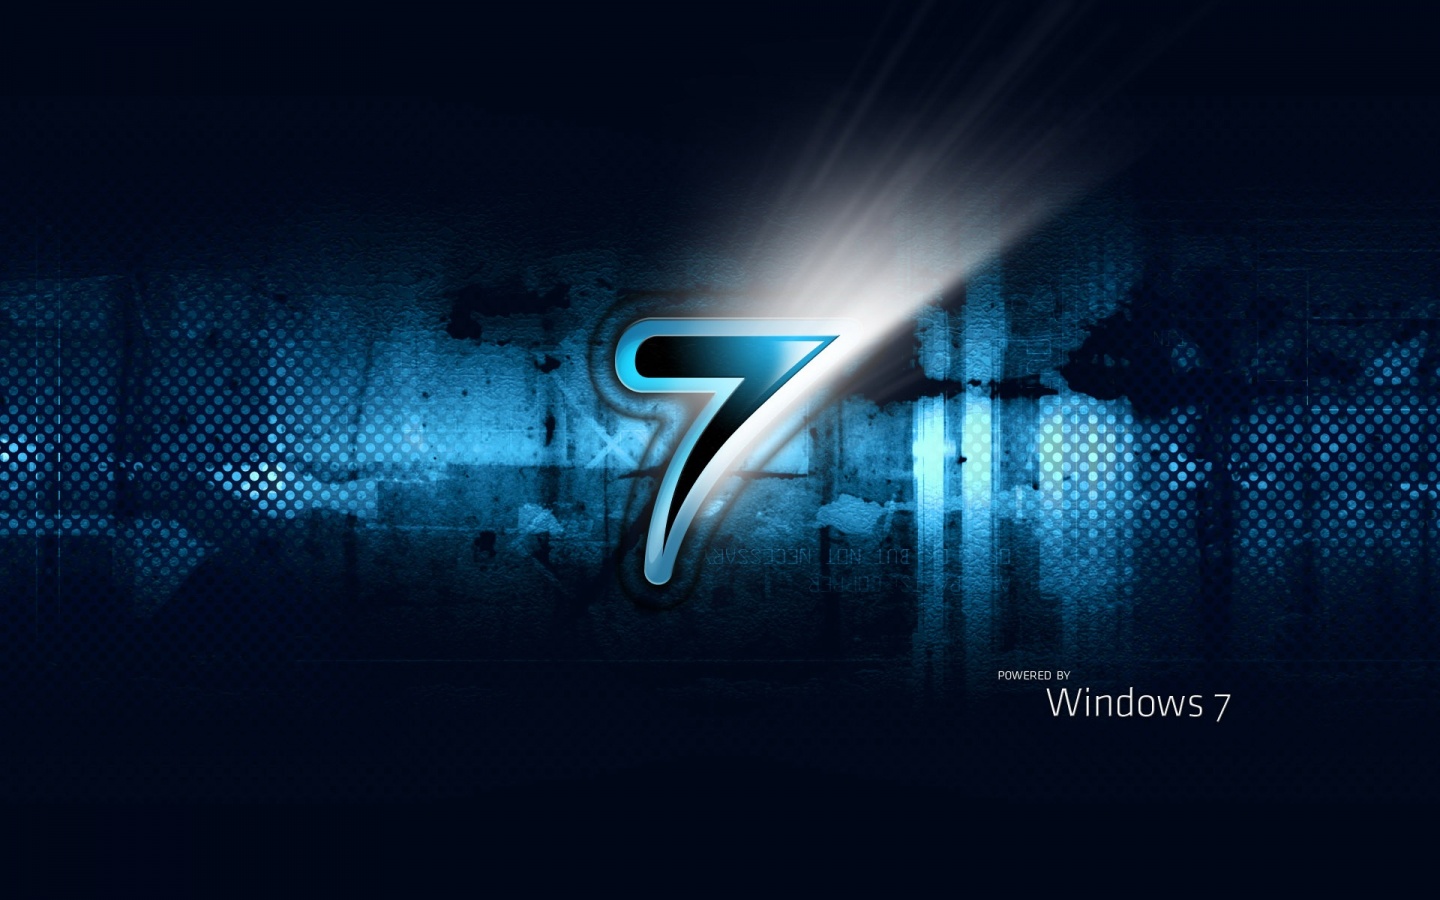 Windows 7 Wallpaper For Desktop | Apps Directories